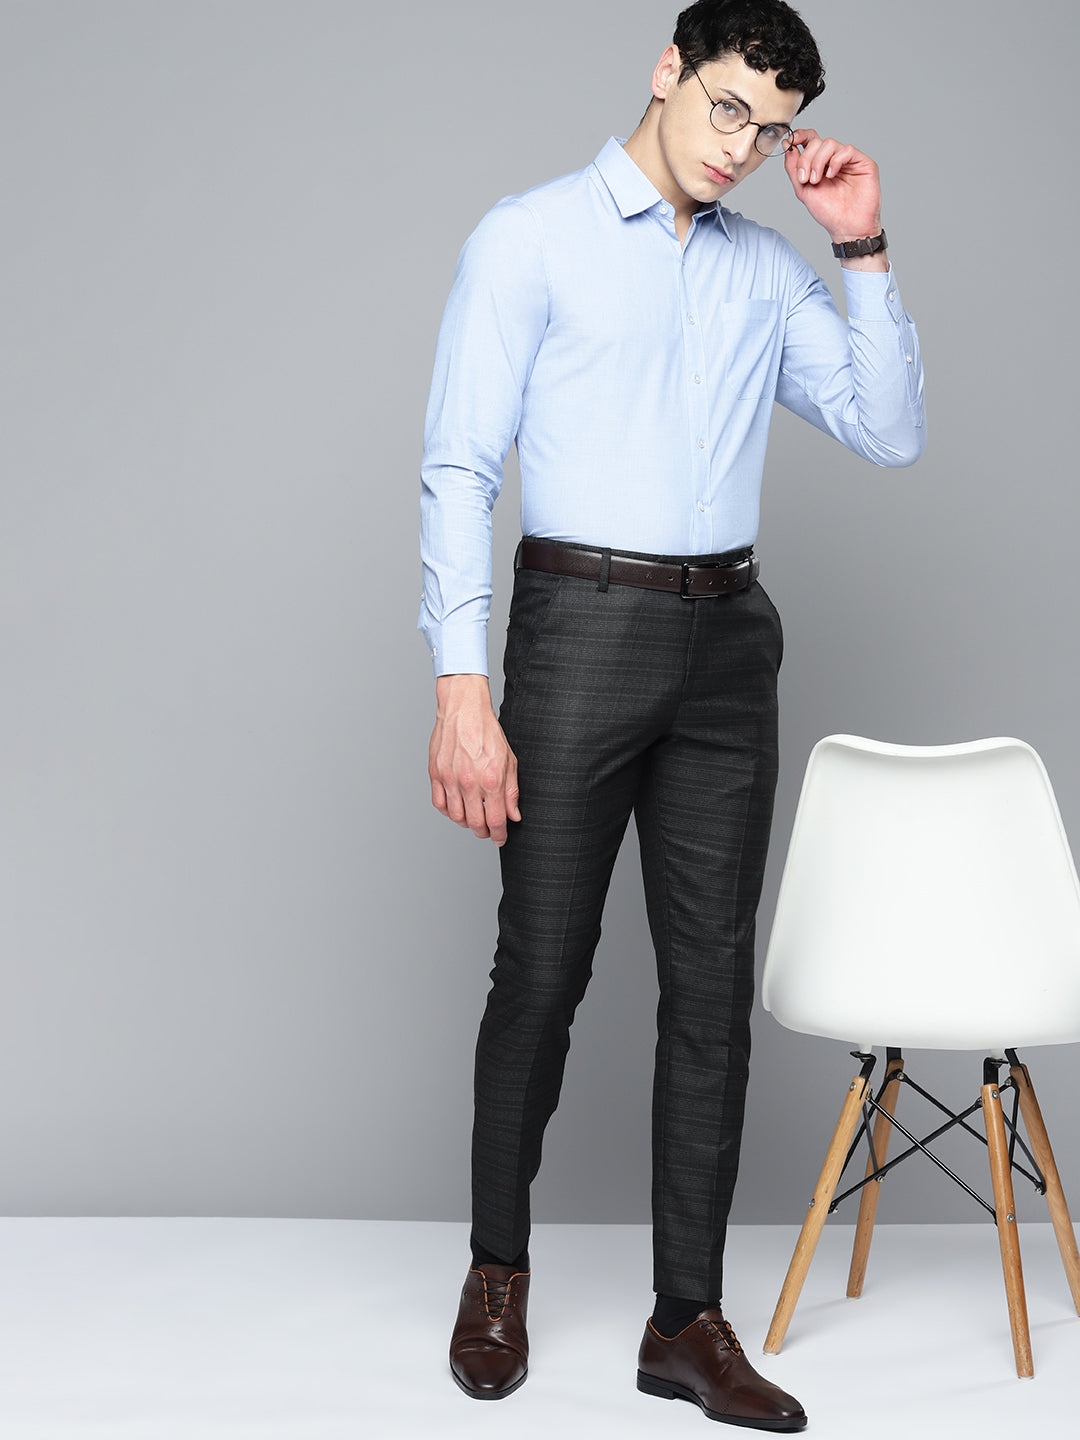 DENNISON Men Smart Self Design Tapered Fit Formal Trousers